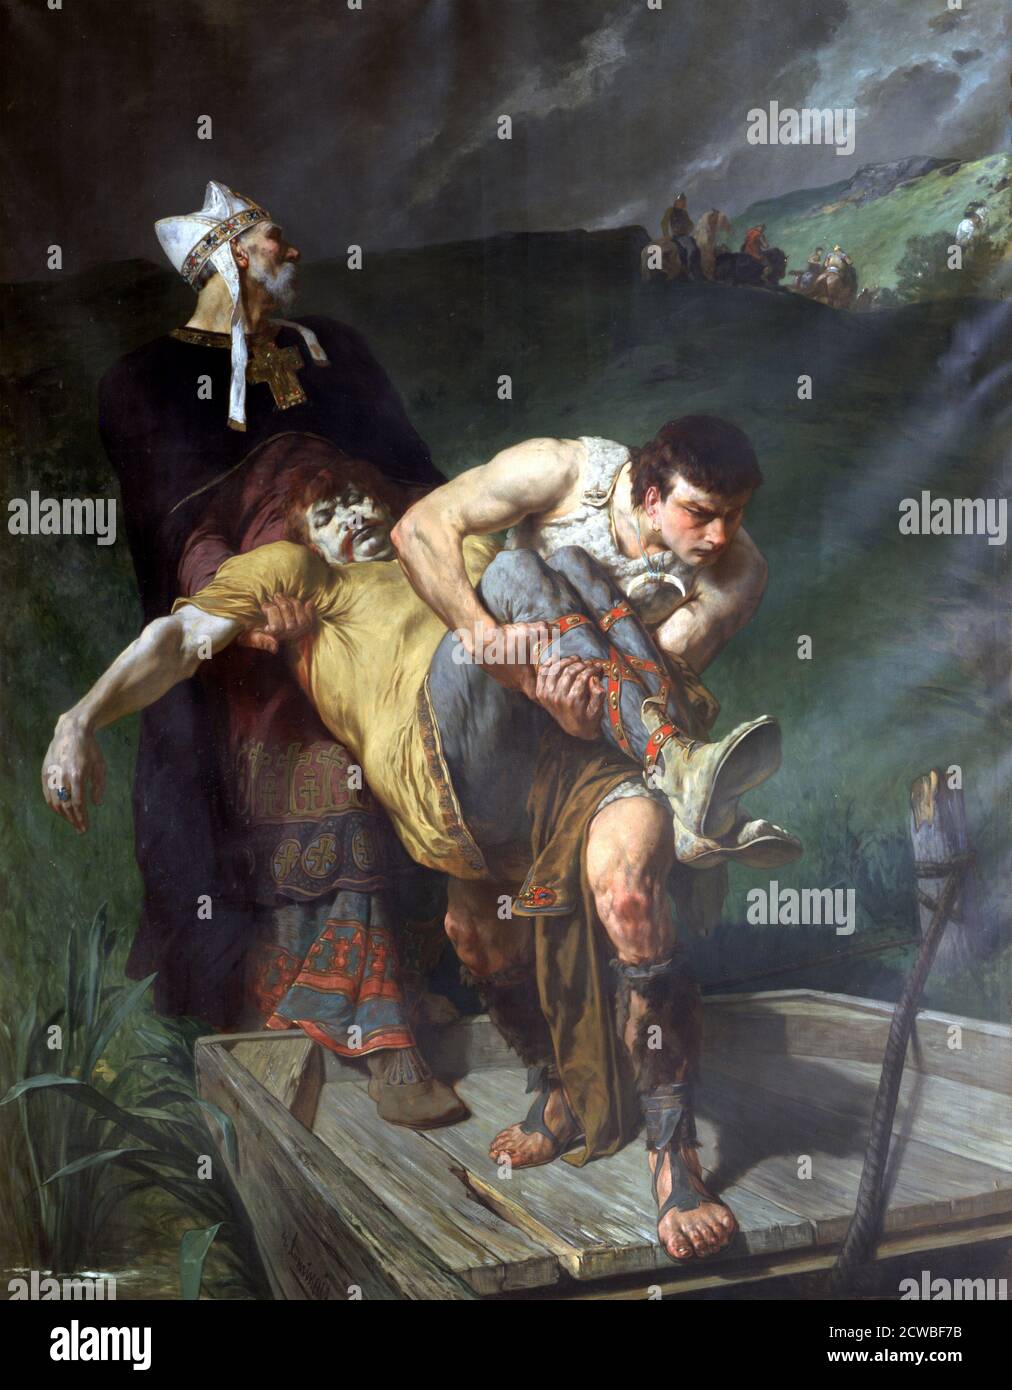 Carrying the Dead', c1842-1896. Künstler: Evariste Vital Luminais. Evariste Vital Luminais (1821-1896) war ein französischer Maler, dessen Werk die frühe französische Geschichte schildert. Stockfoto